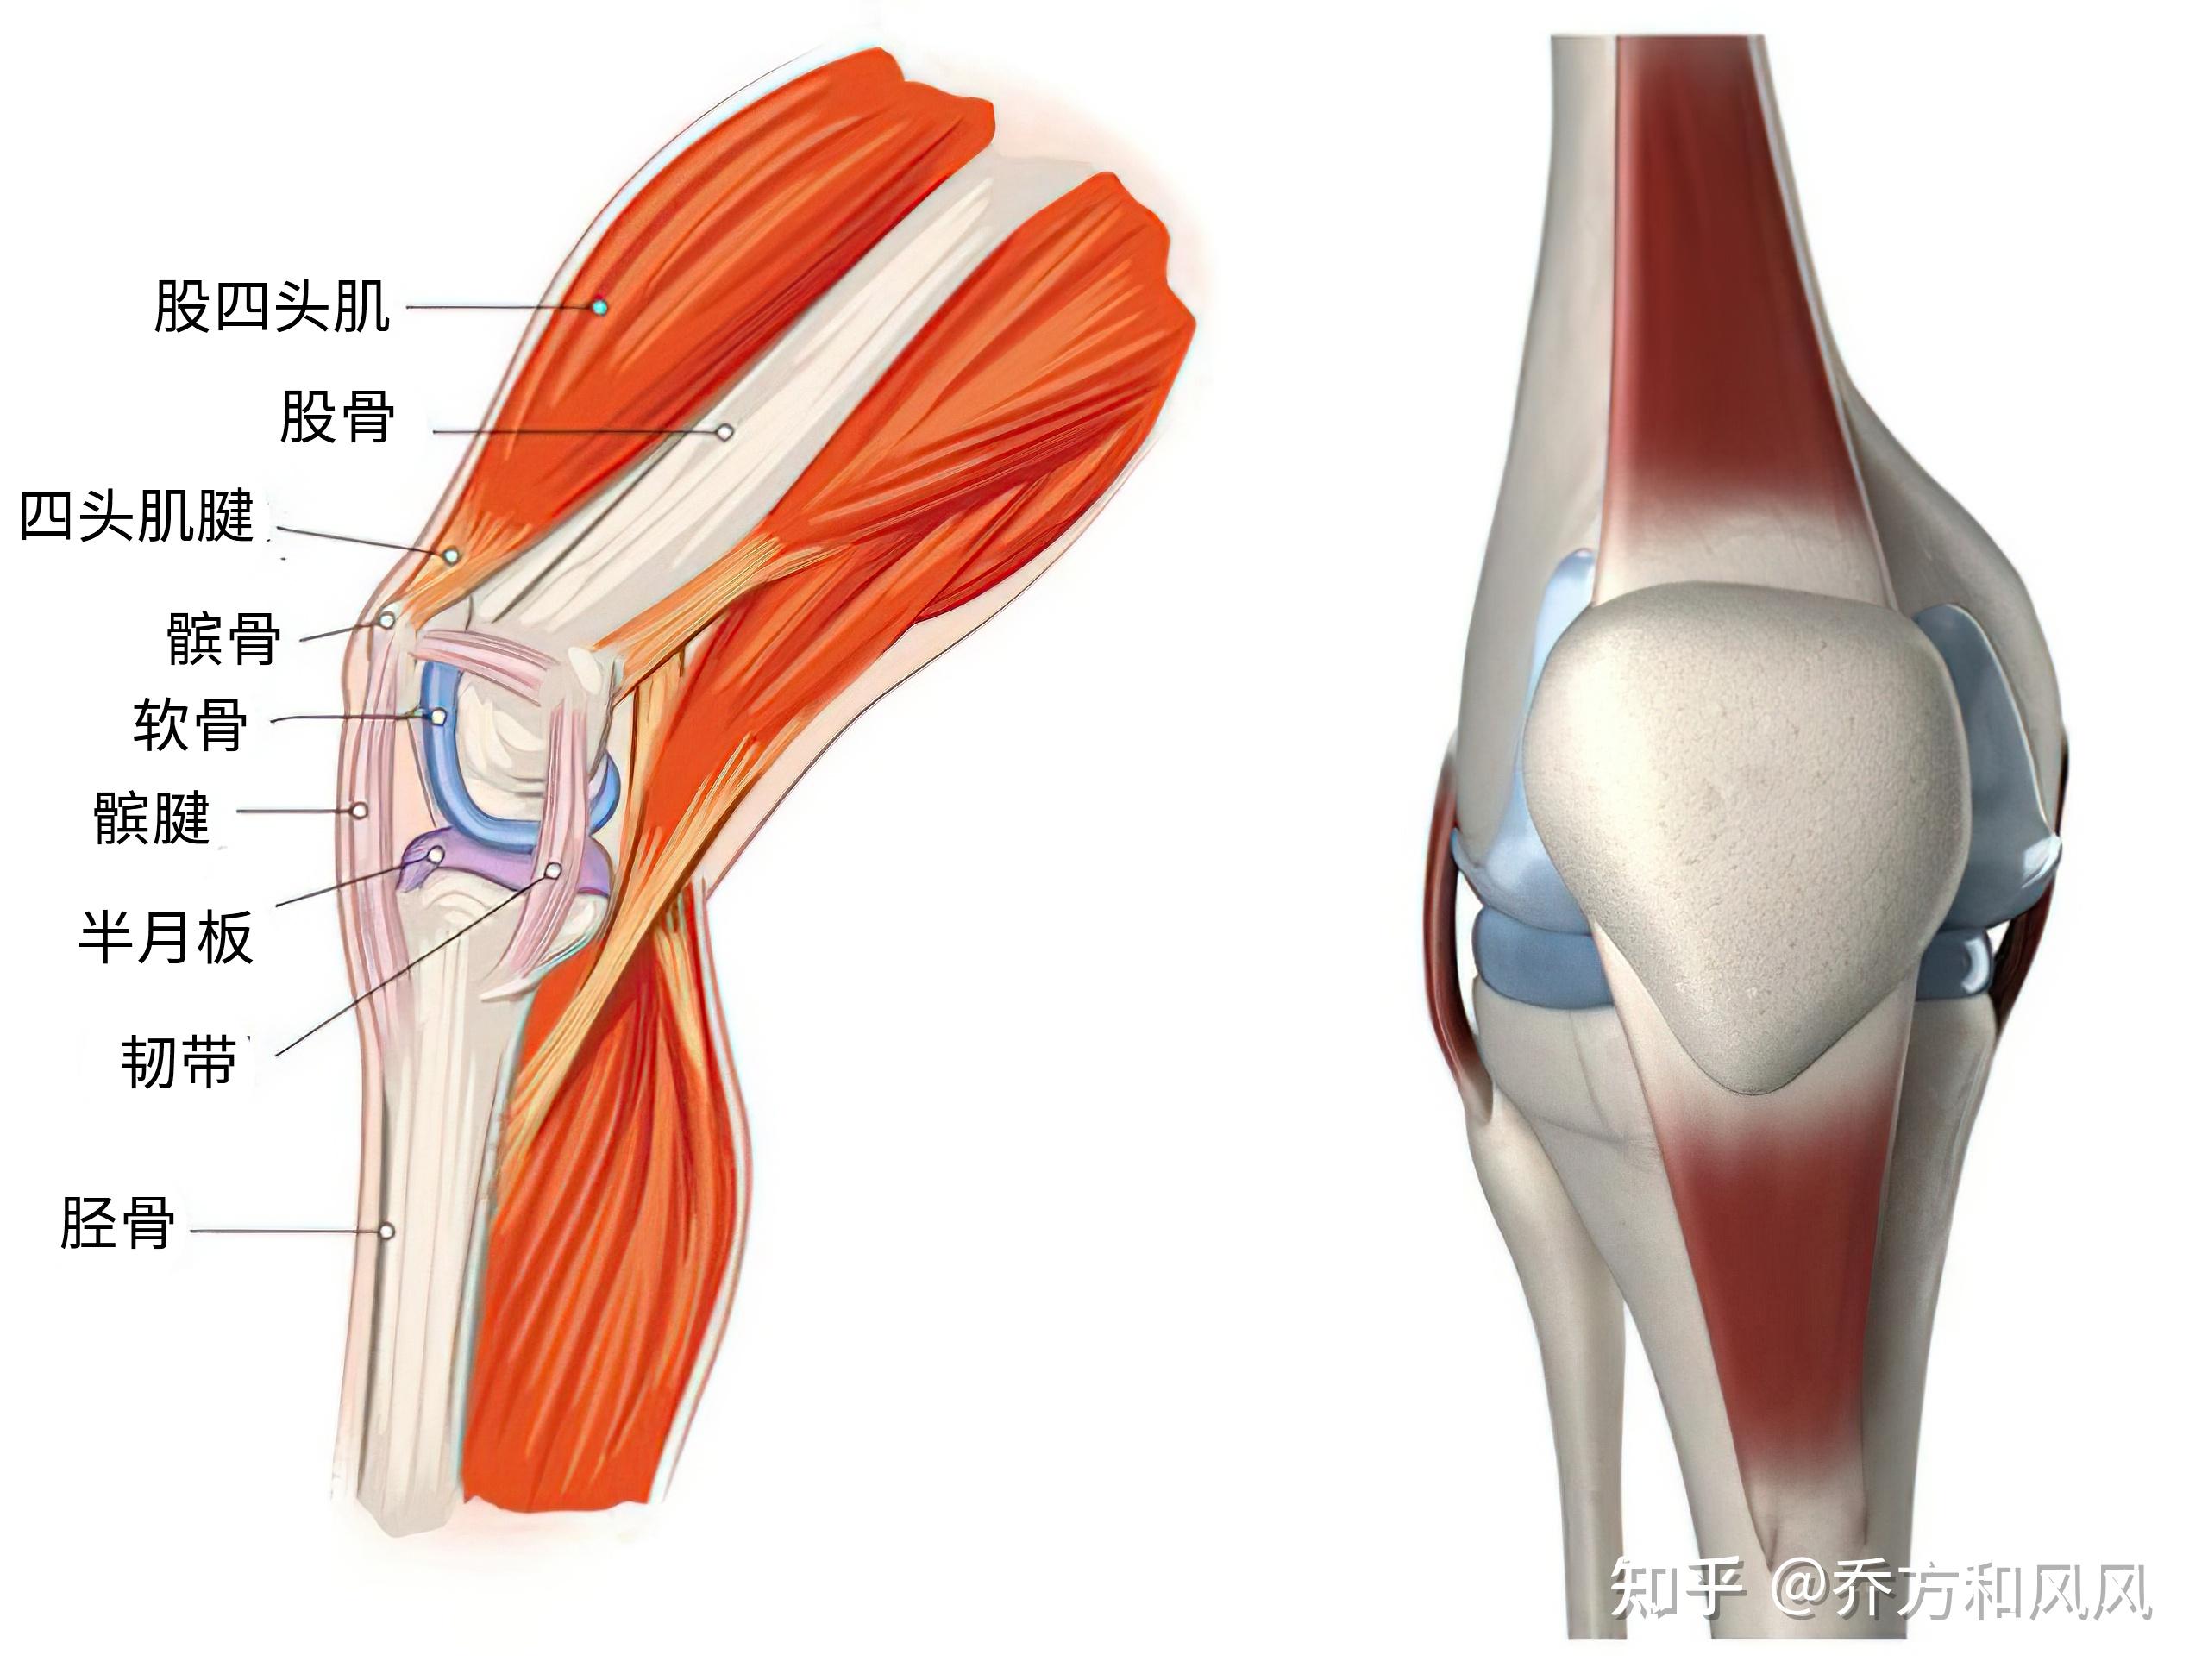 我们已经了解了与膝关节稳定有关的韧带,关节囊,半月板和肌肉肌腱